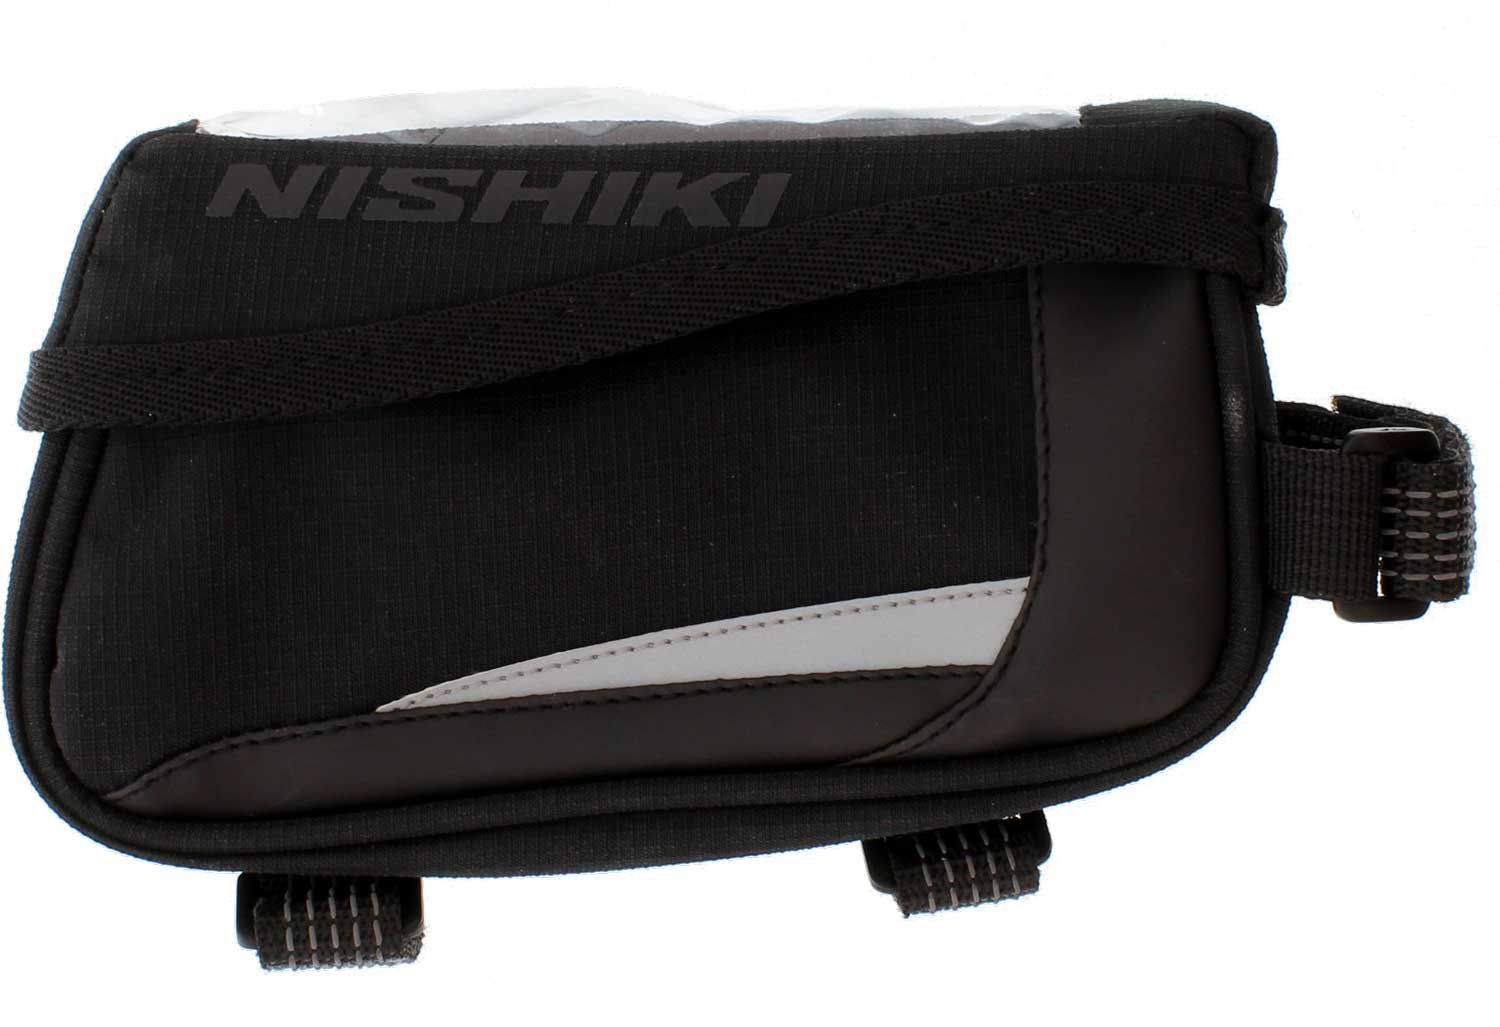 nishiki bike bag